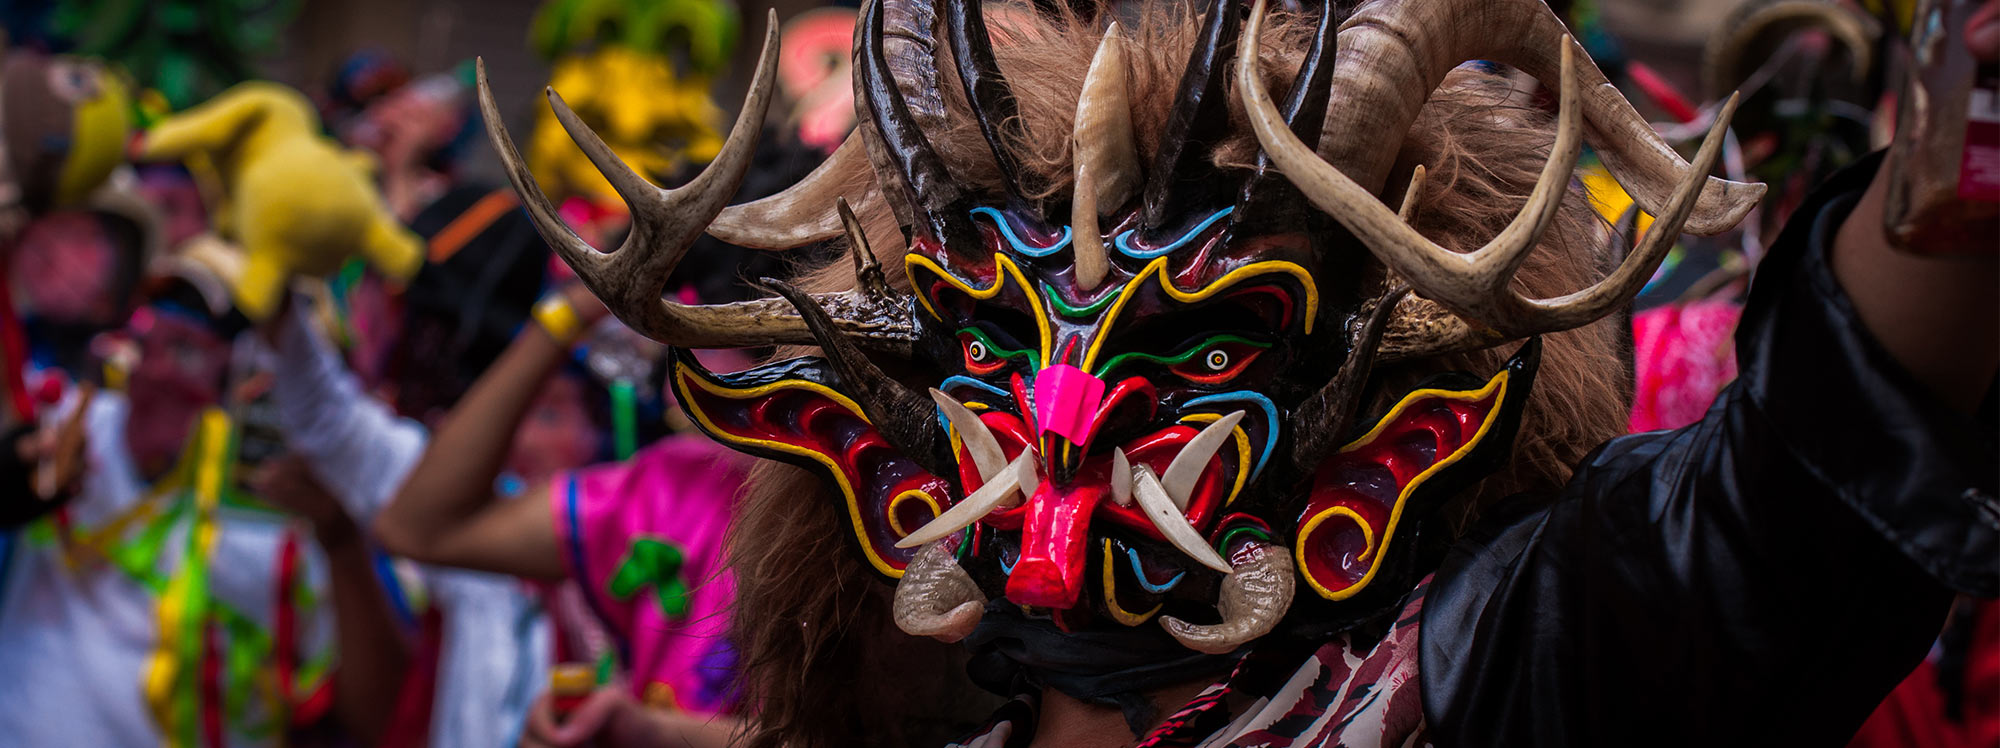 Así se vive el Carnaval en Ambato